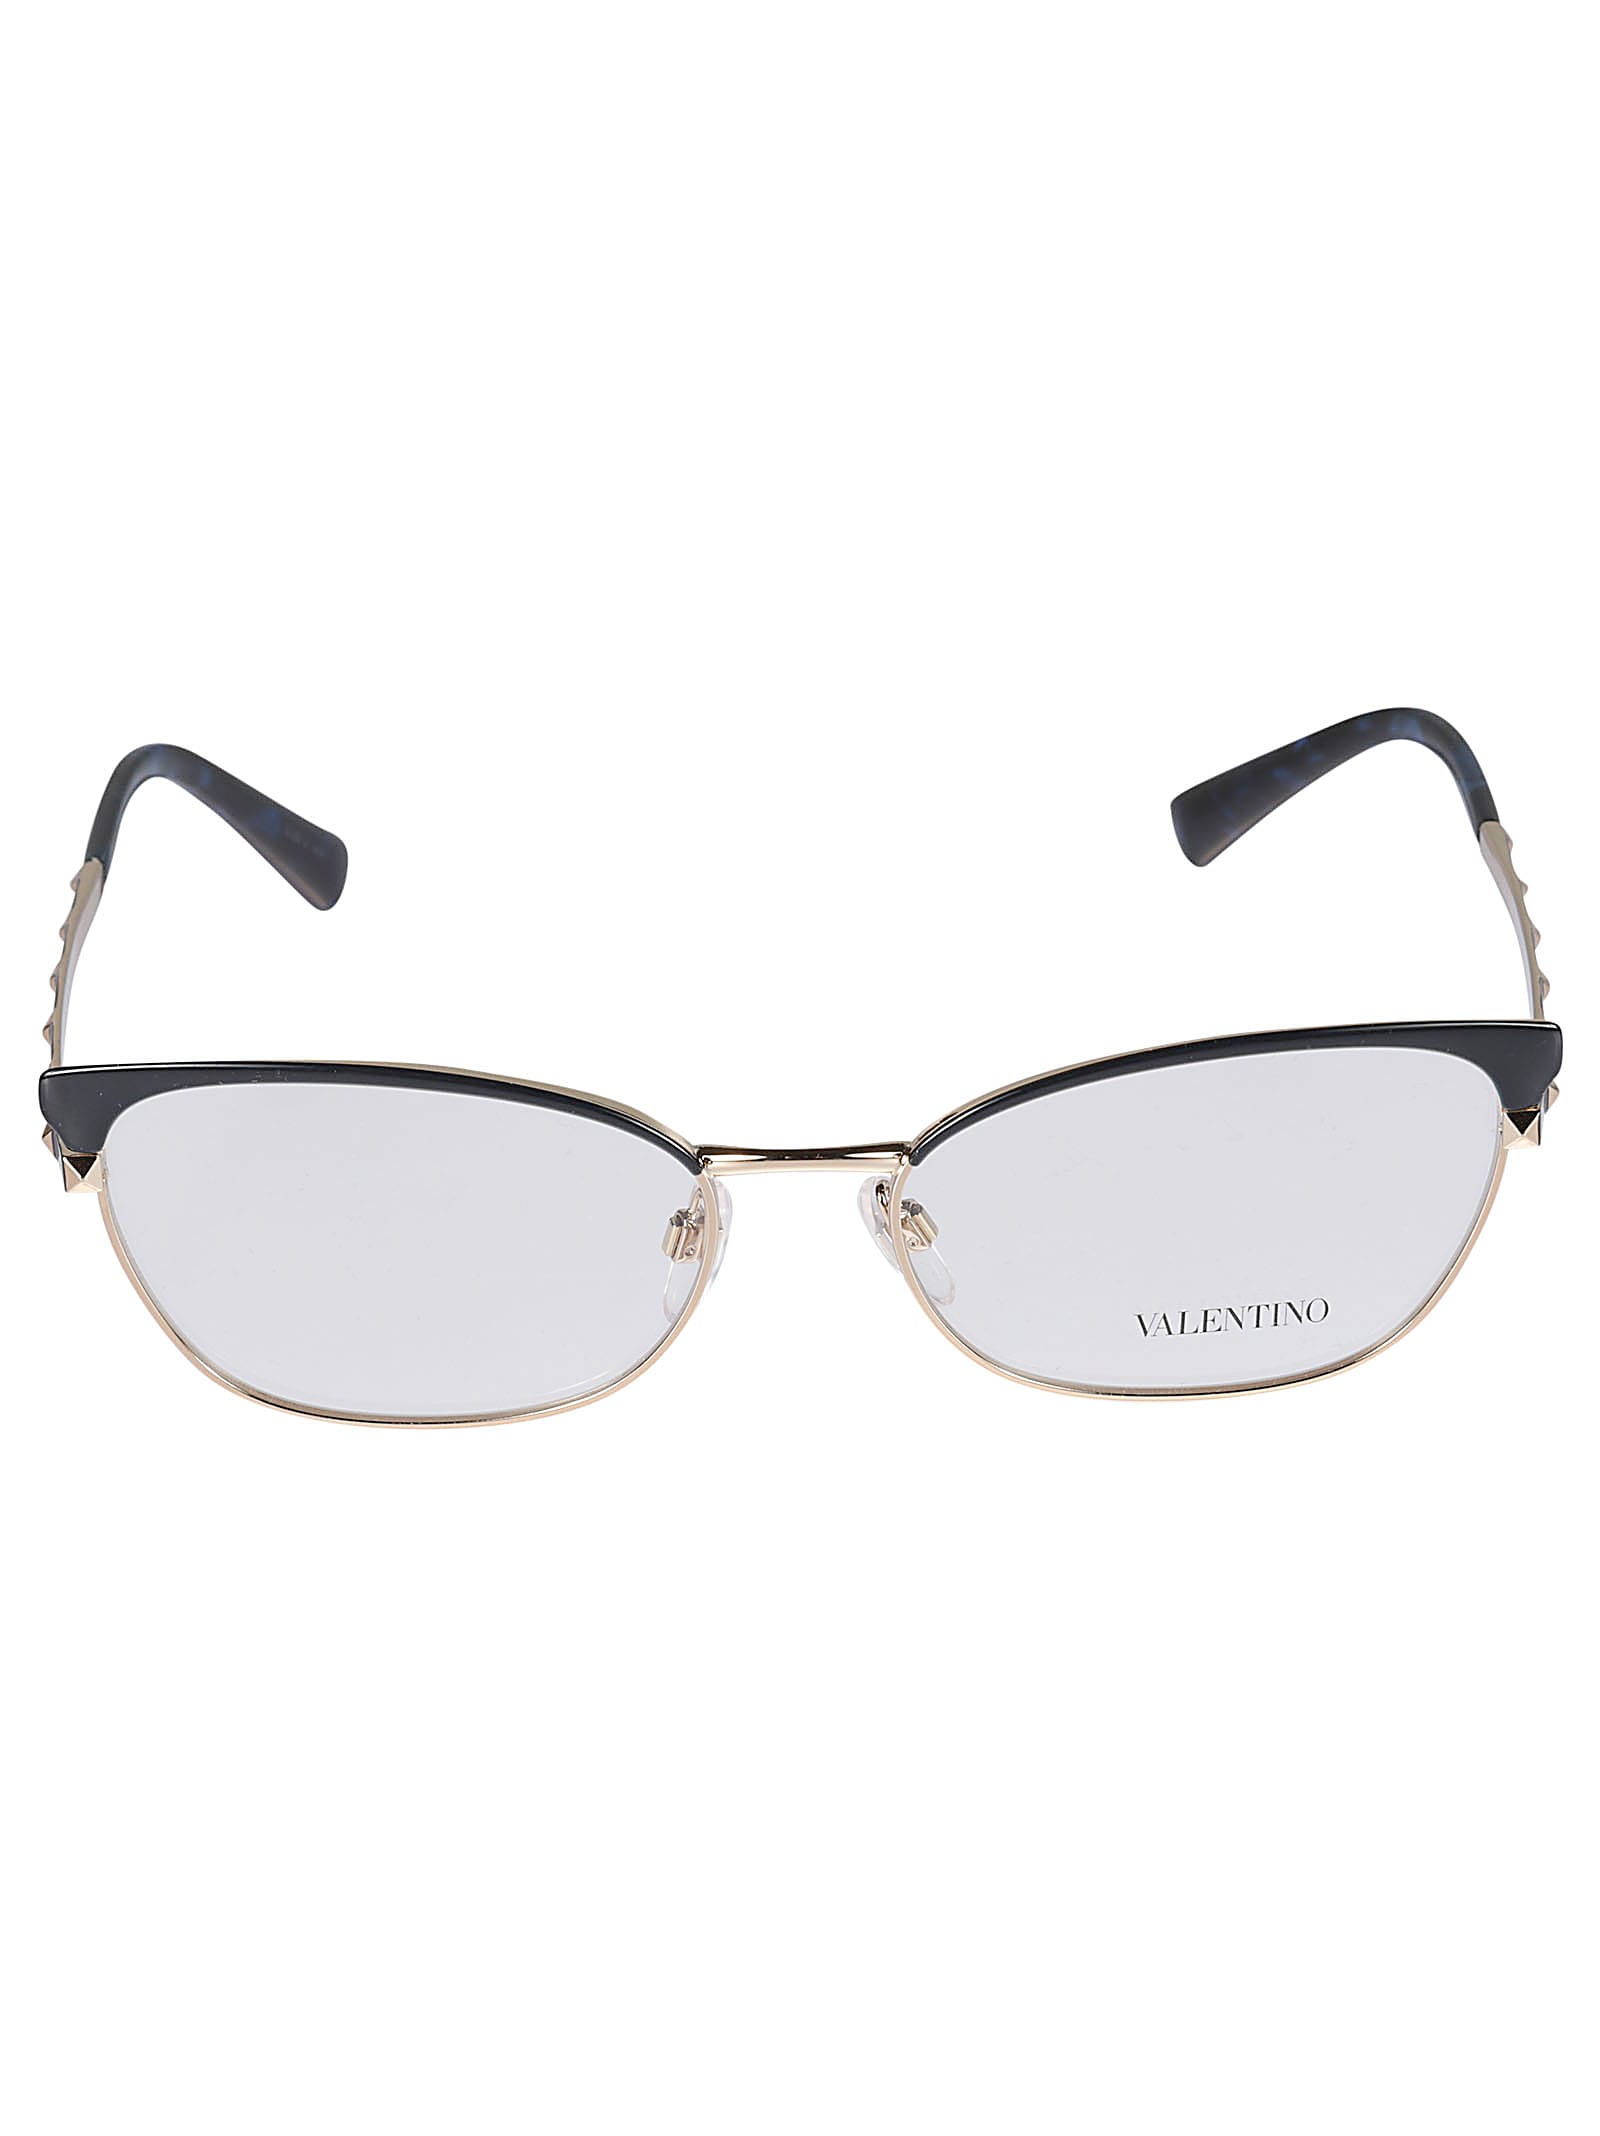 Valentino Vista3004 Glasses